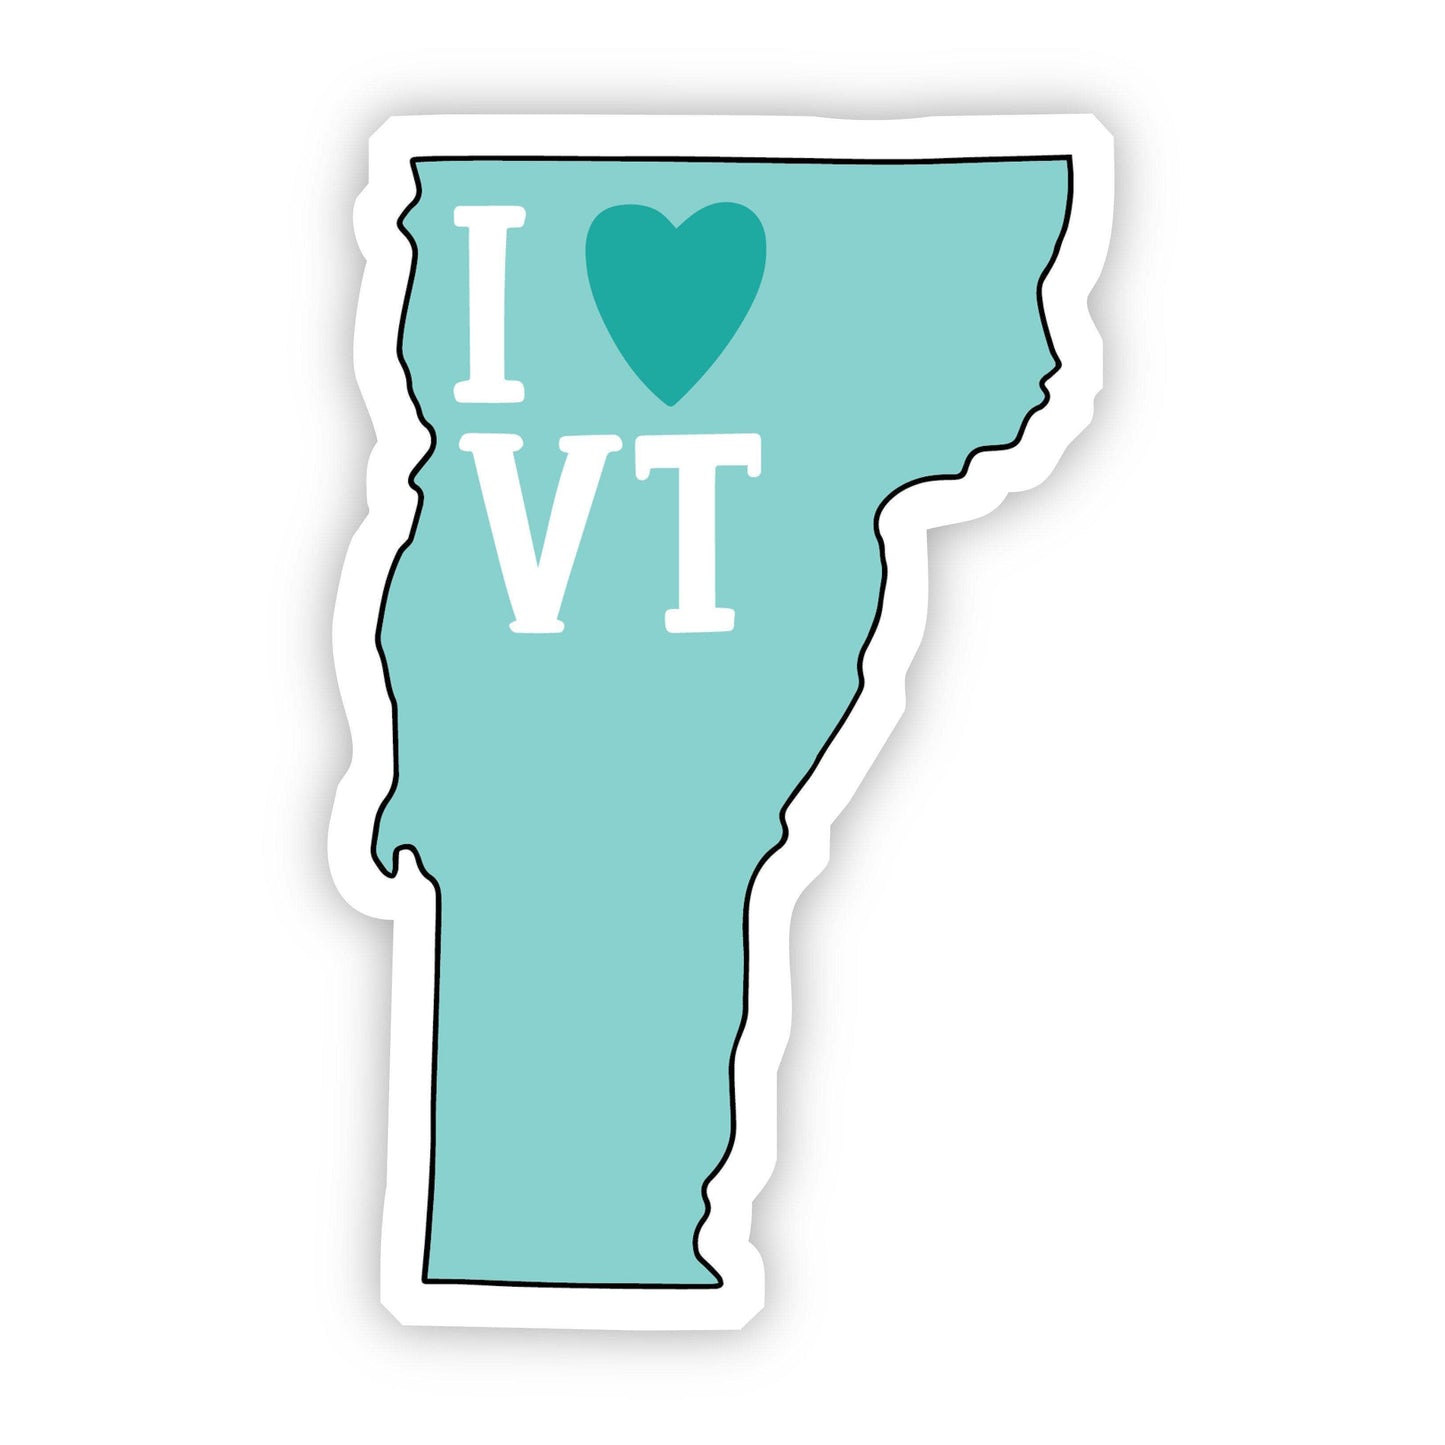 I Love Vermont Teal Sticker